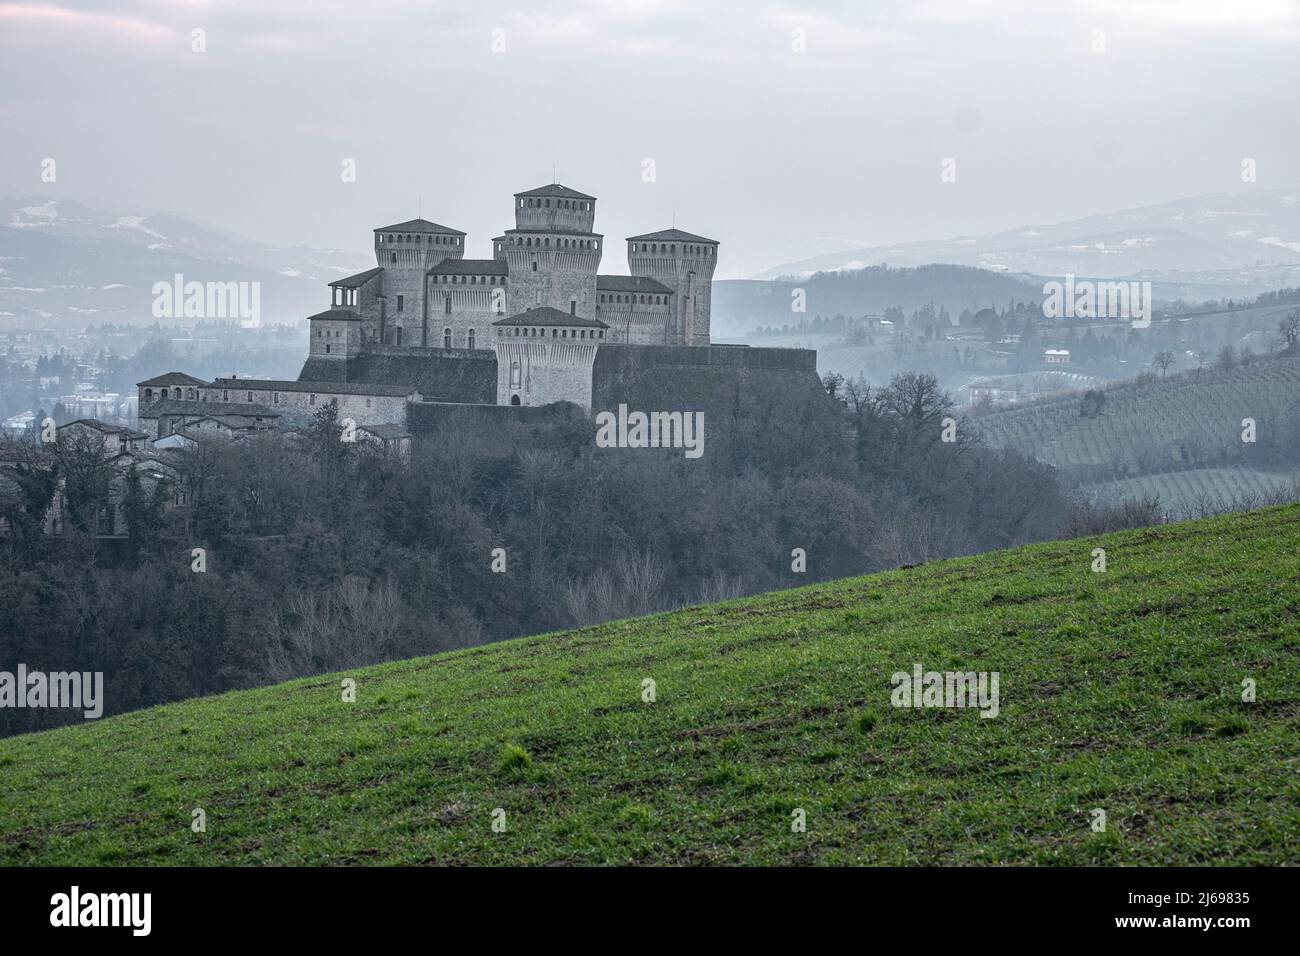 Castello medievale di Torrechiara con torri quadrate su una collina in un giorno di nebbia, Torrechiara, Emilia Romagna, Italia Foto Stock